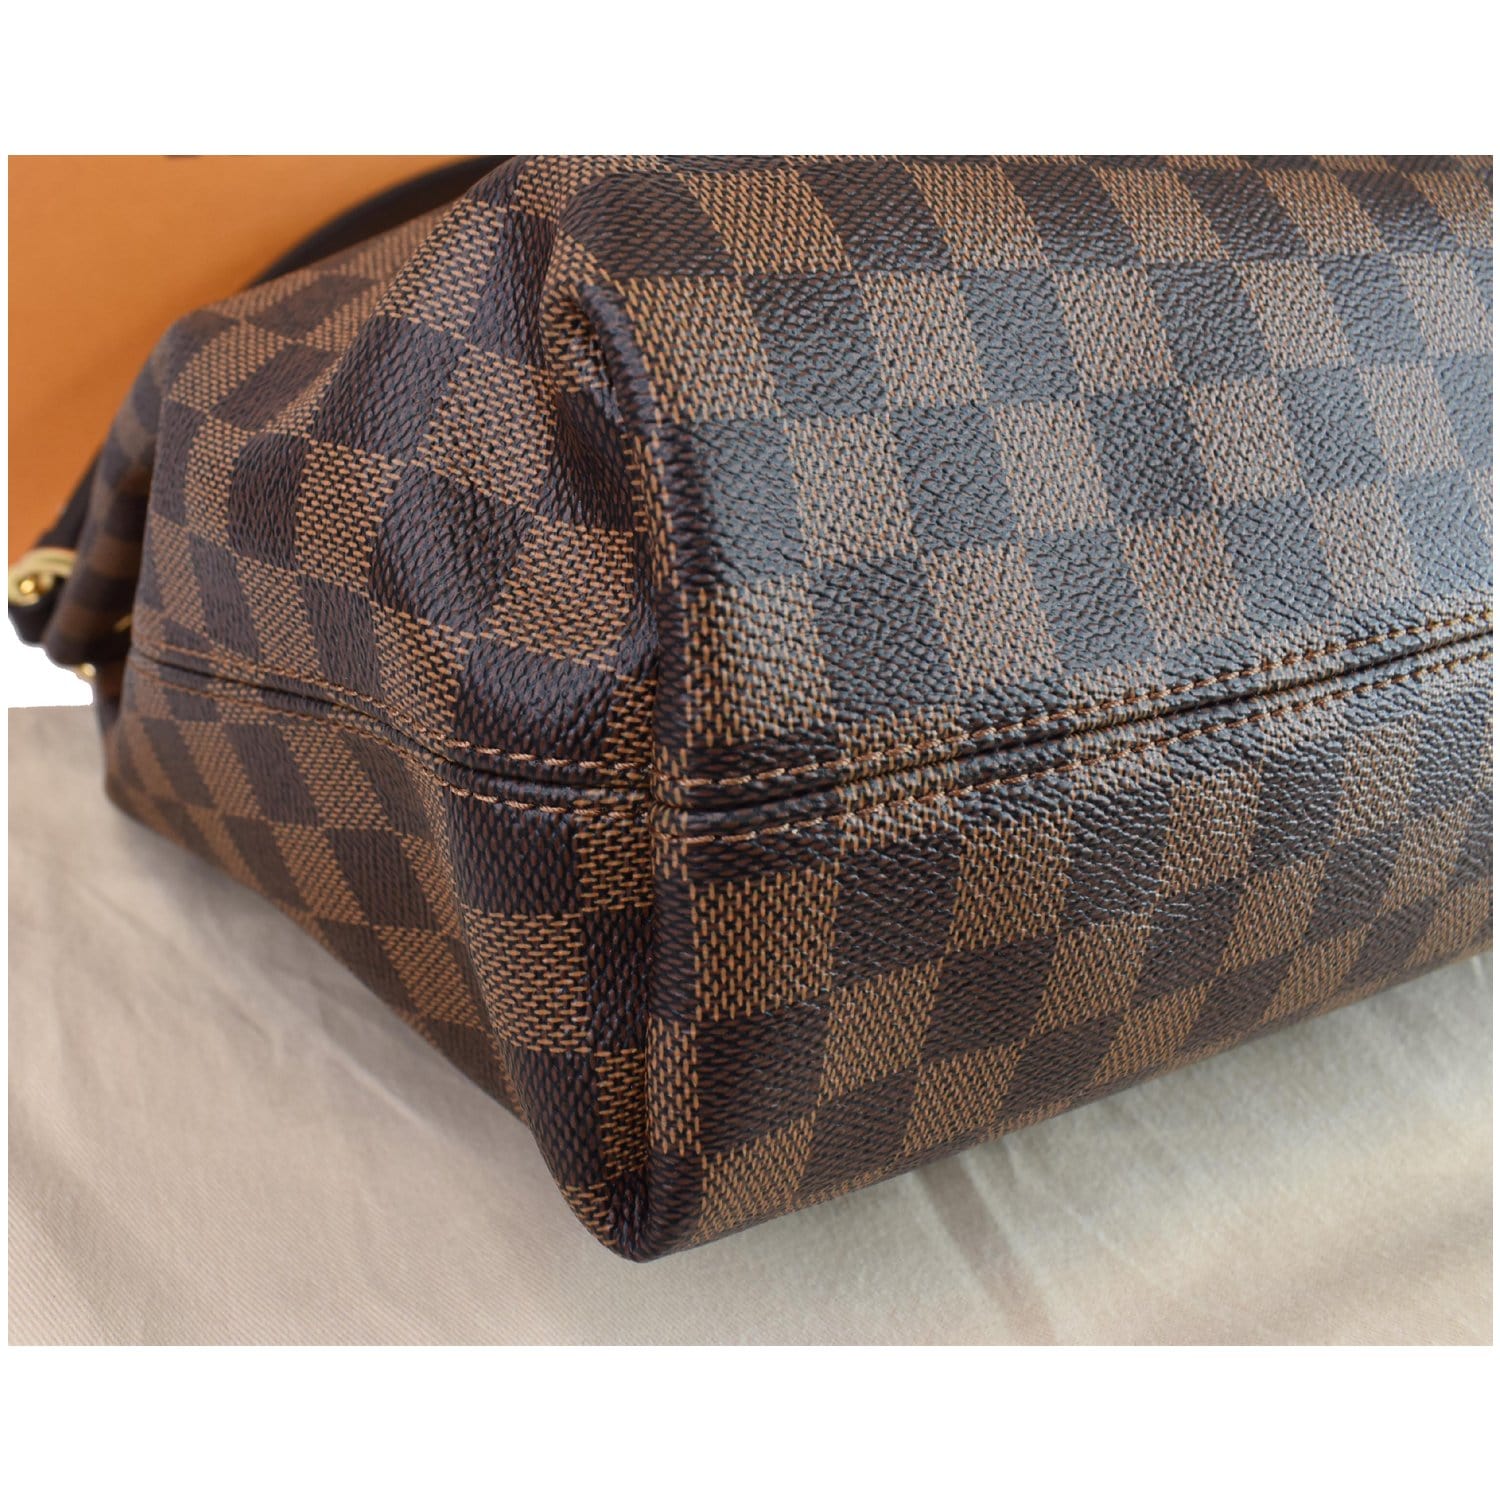 Louis Vuitton, Bags, Sold Louis Vuitton Graceful Pm